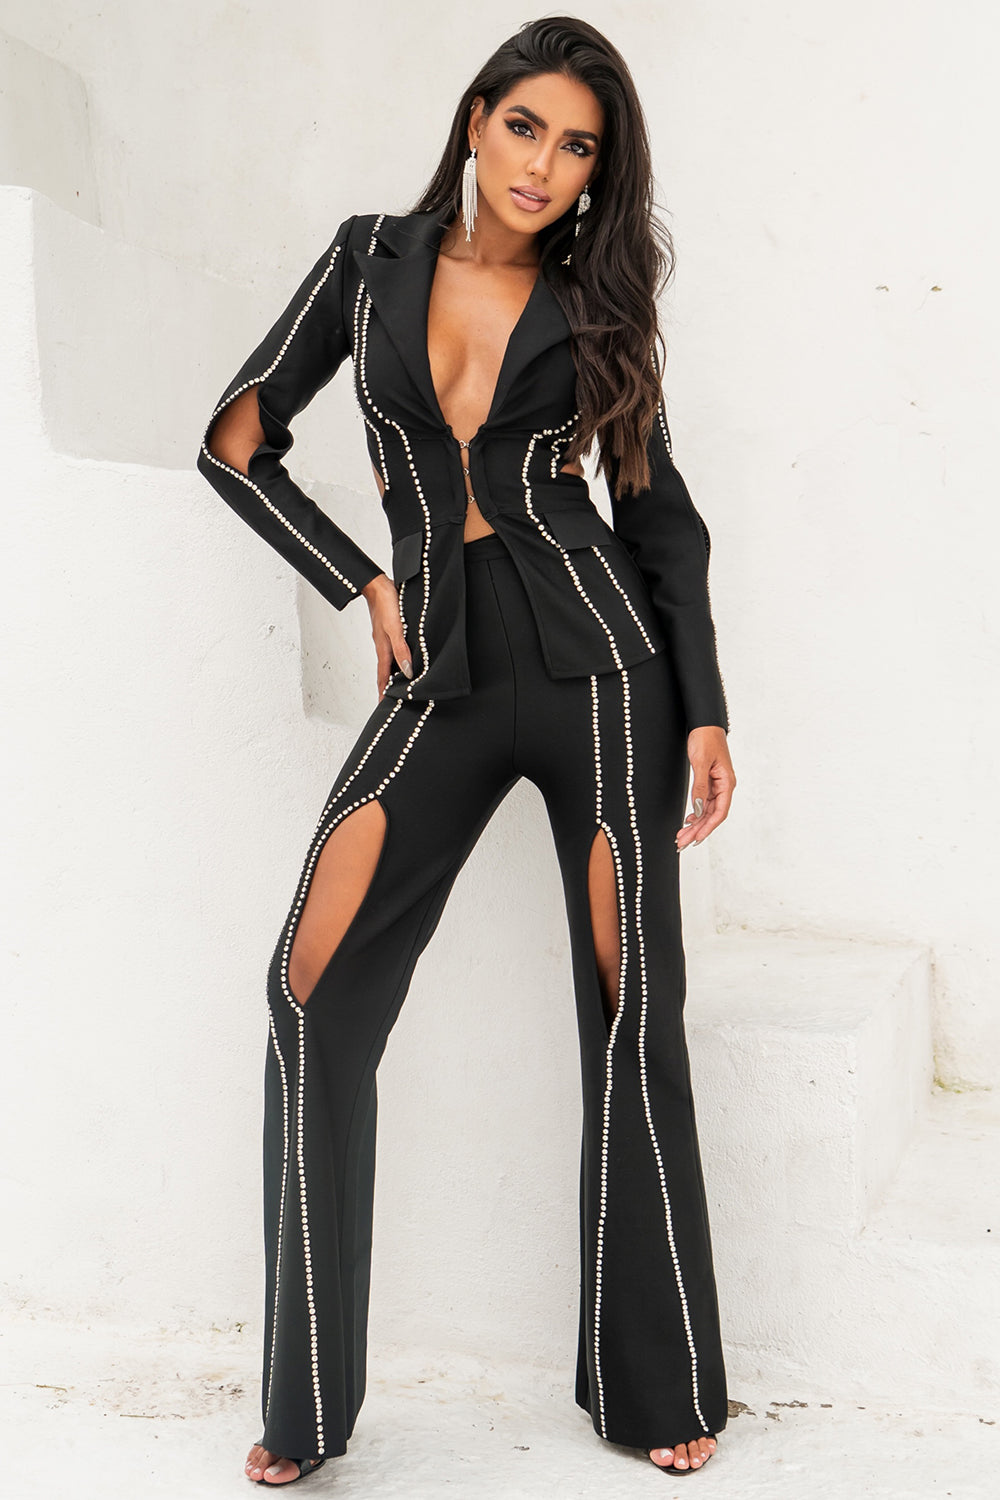 Gabriela Black Fashion Suit